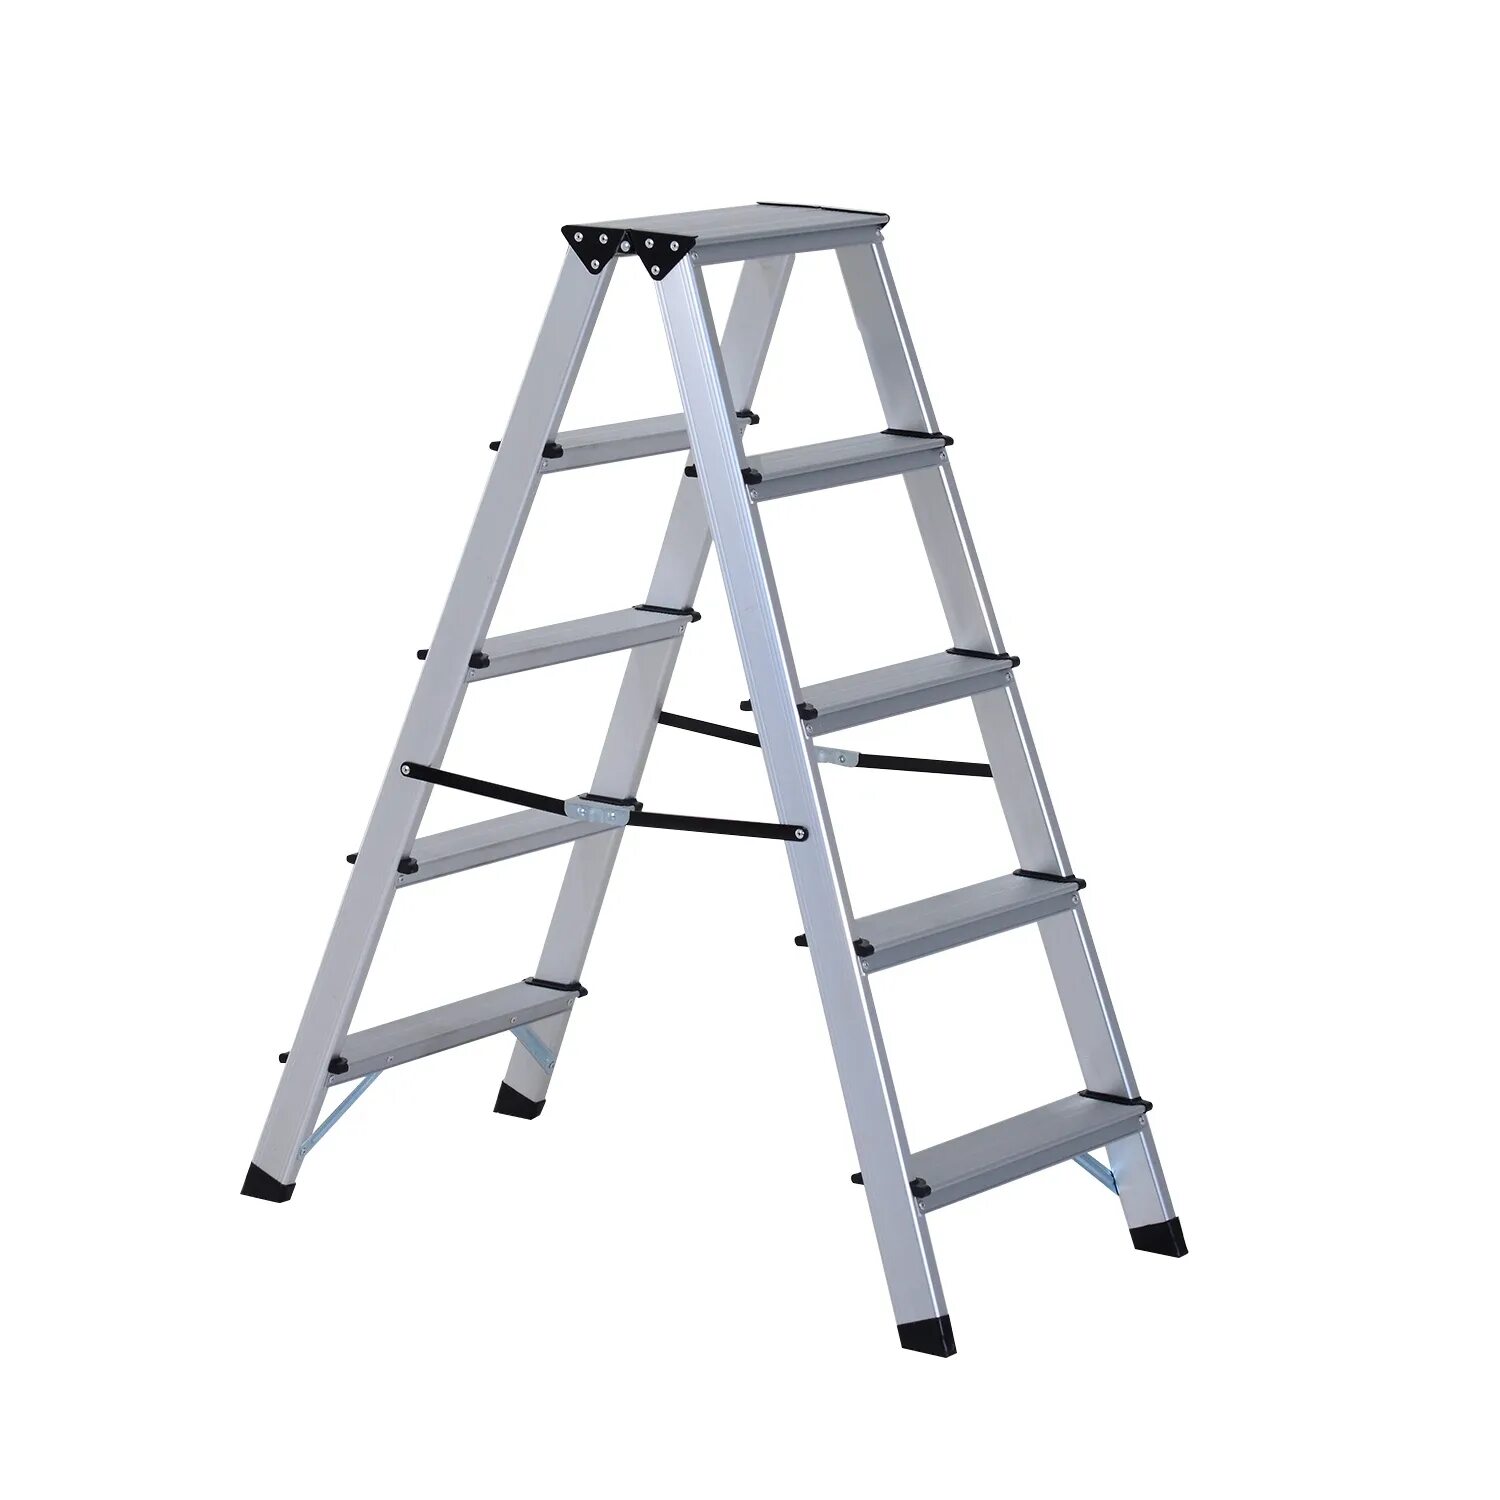 Купить выдвижную лестницу алюминиевую. Стремянка «Aluminum Ladder». Стул-стремянка алюминиевая складная (1 ступень) UPU Ladder updh01. Лестница складное (5-10-15 м). Встраиваемая стремянка "Step-Fix".